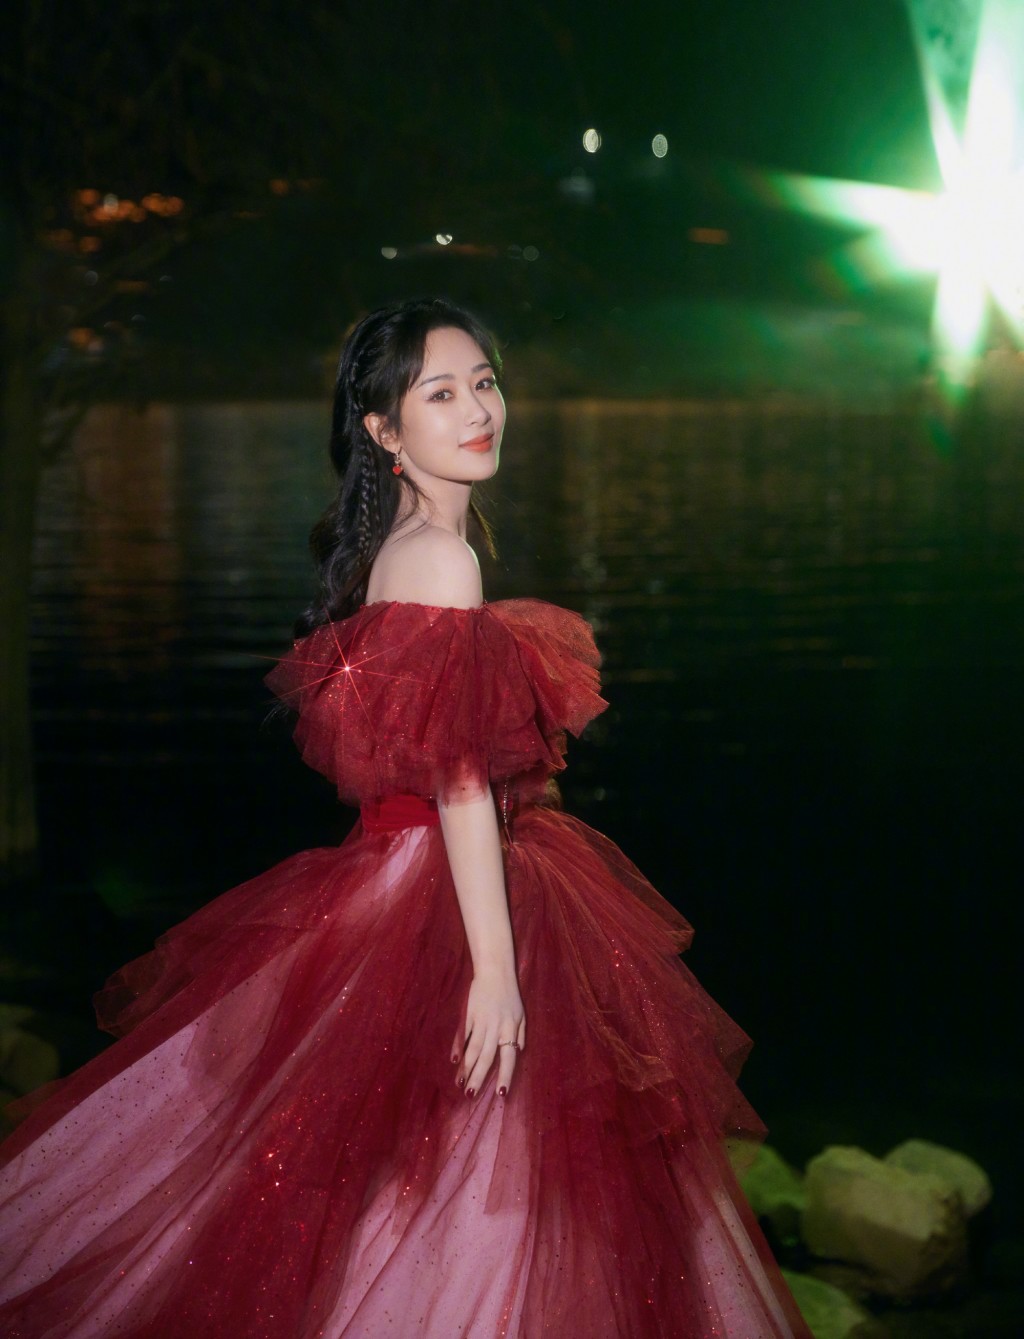 杨紫酒红色星光公主裙甜美优雅写真图片